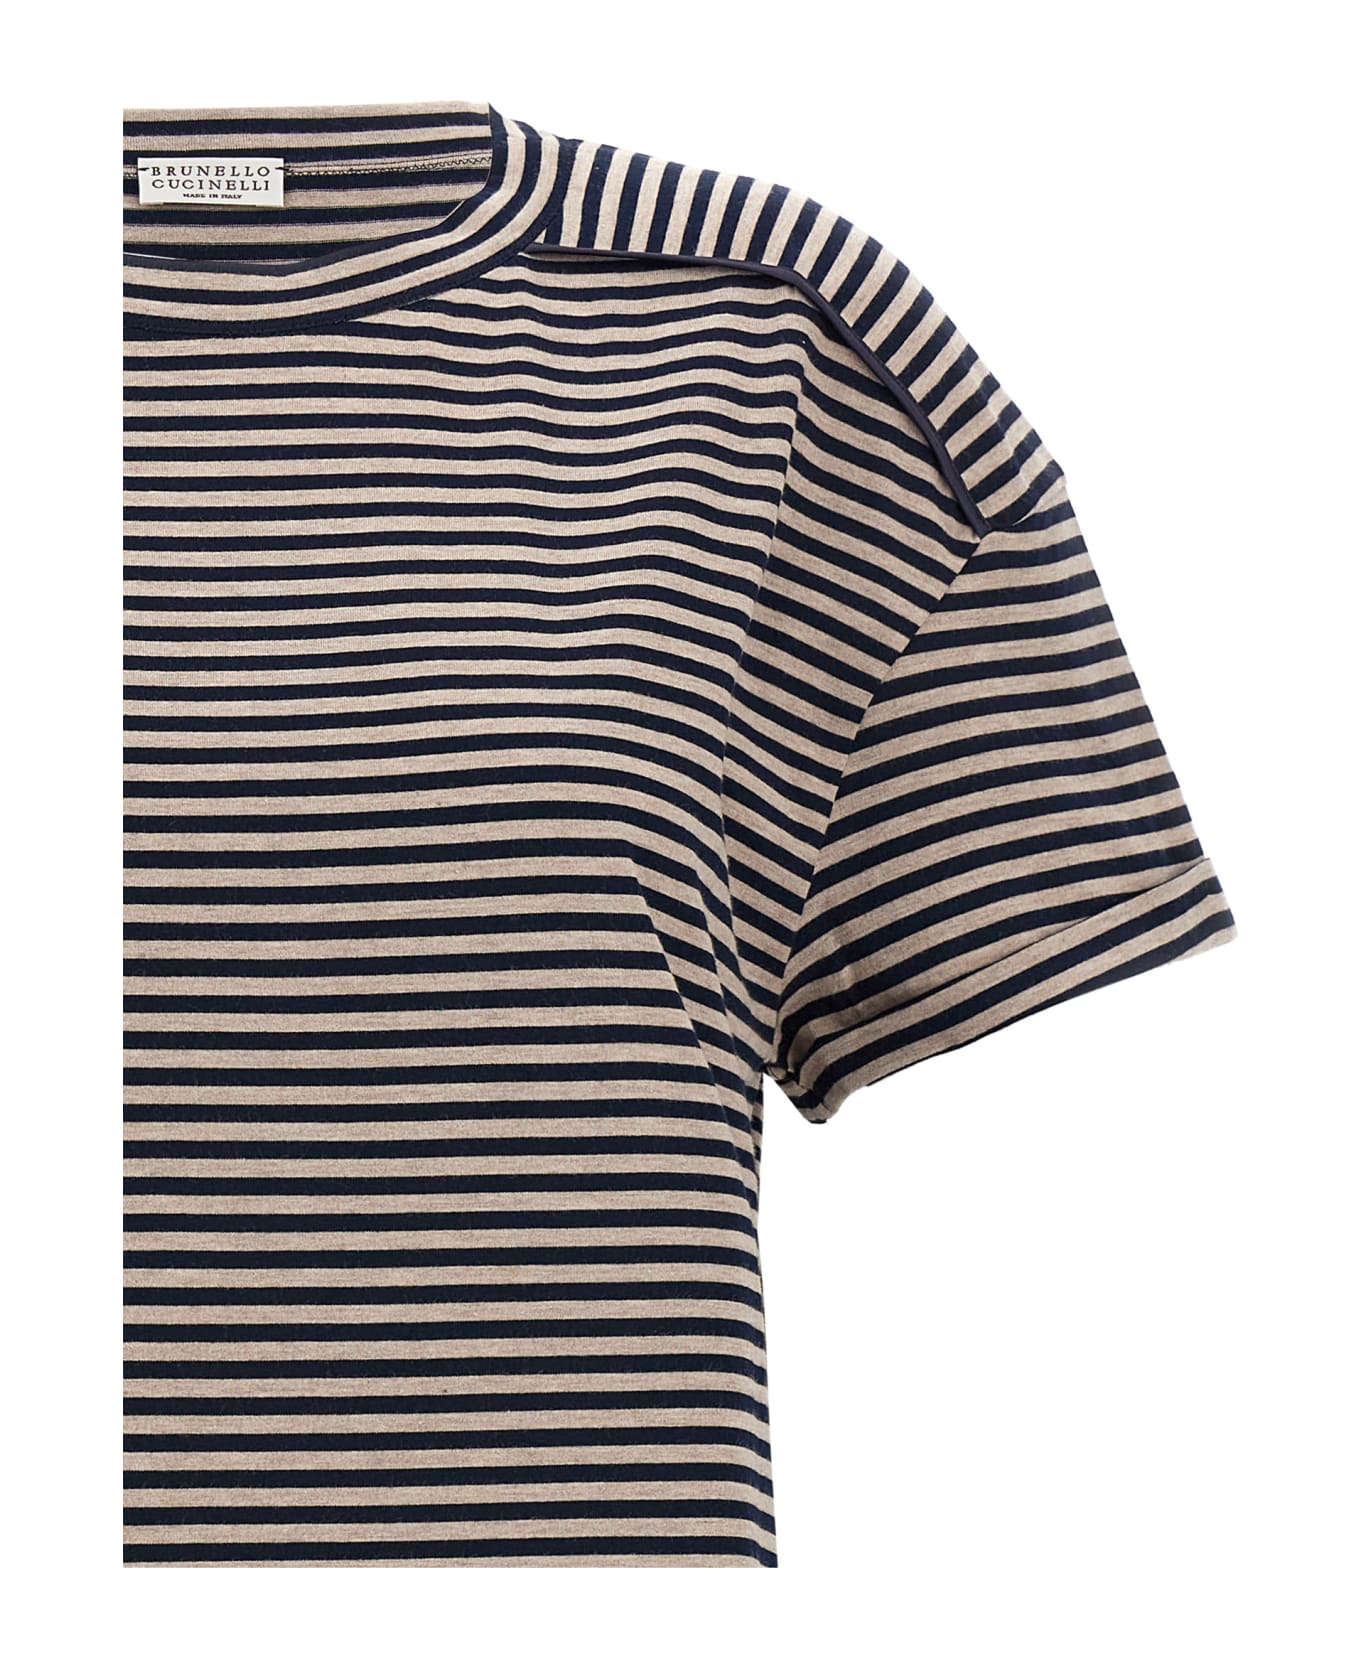 Brunello Cucinelli Striped T-shirt - White/Black